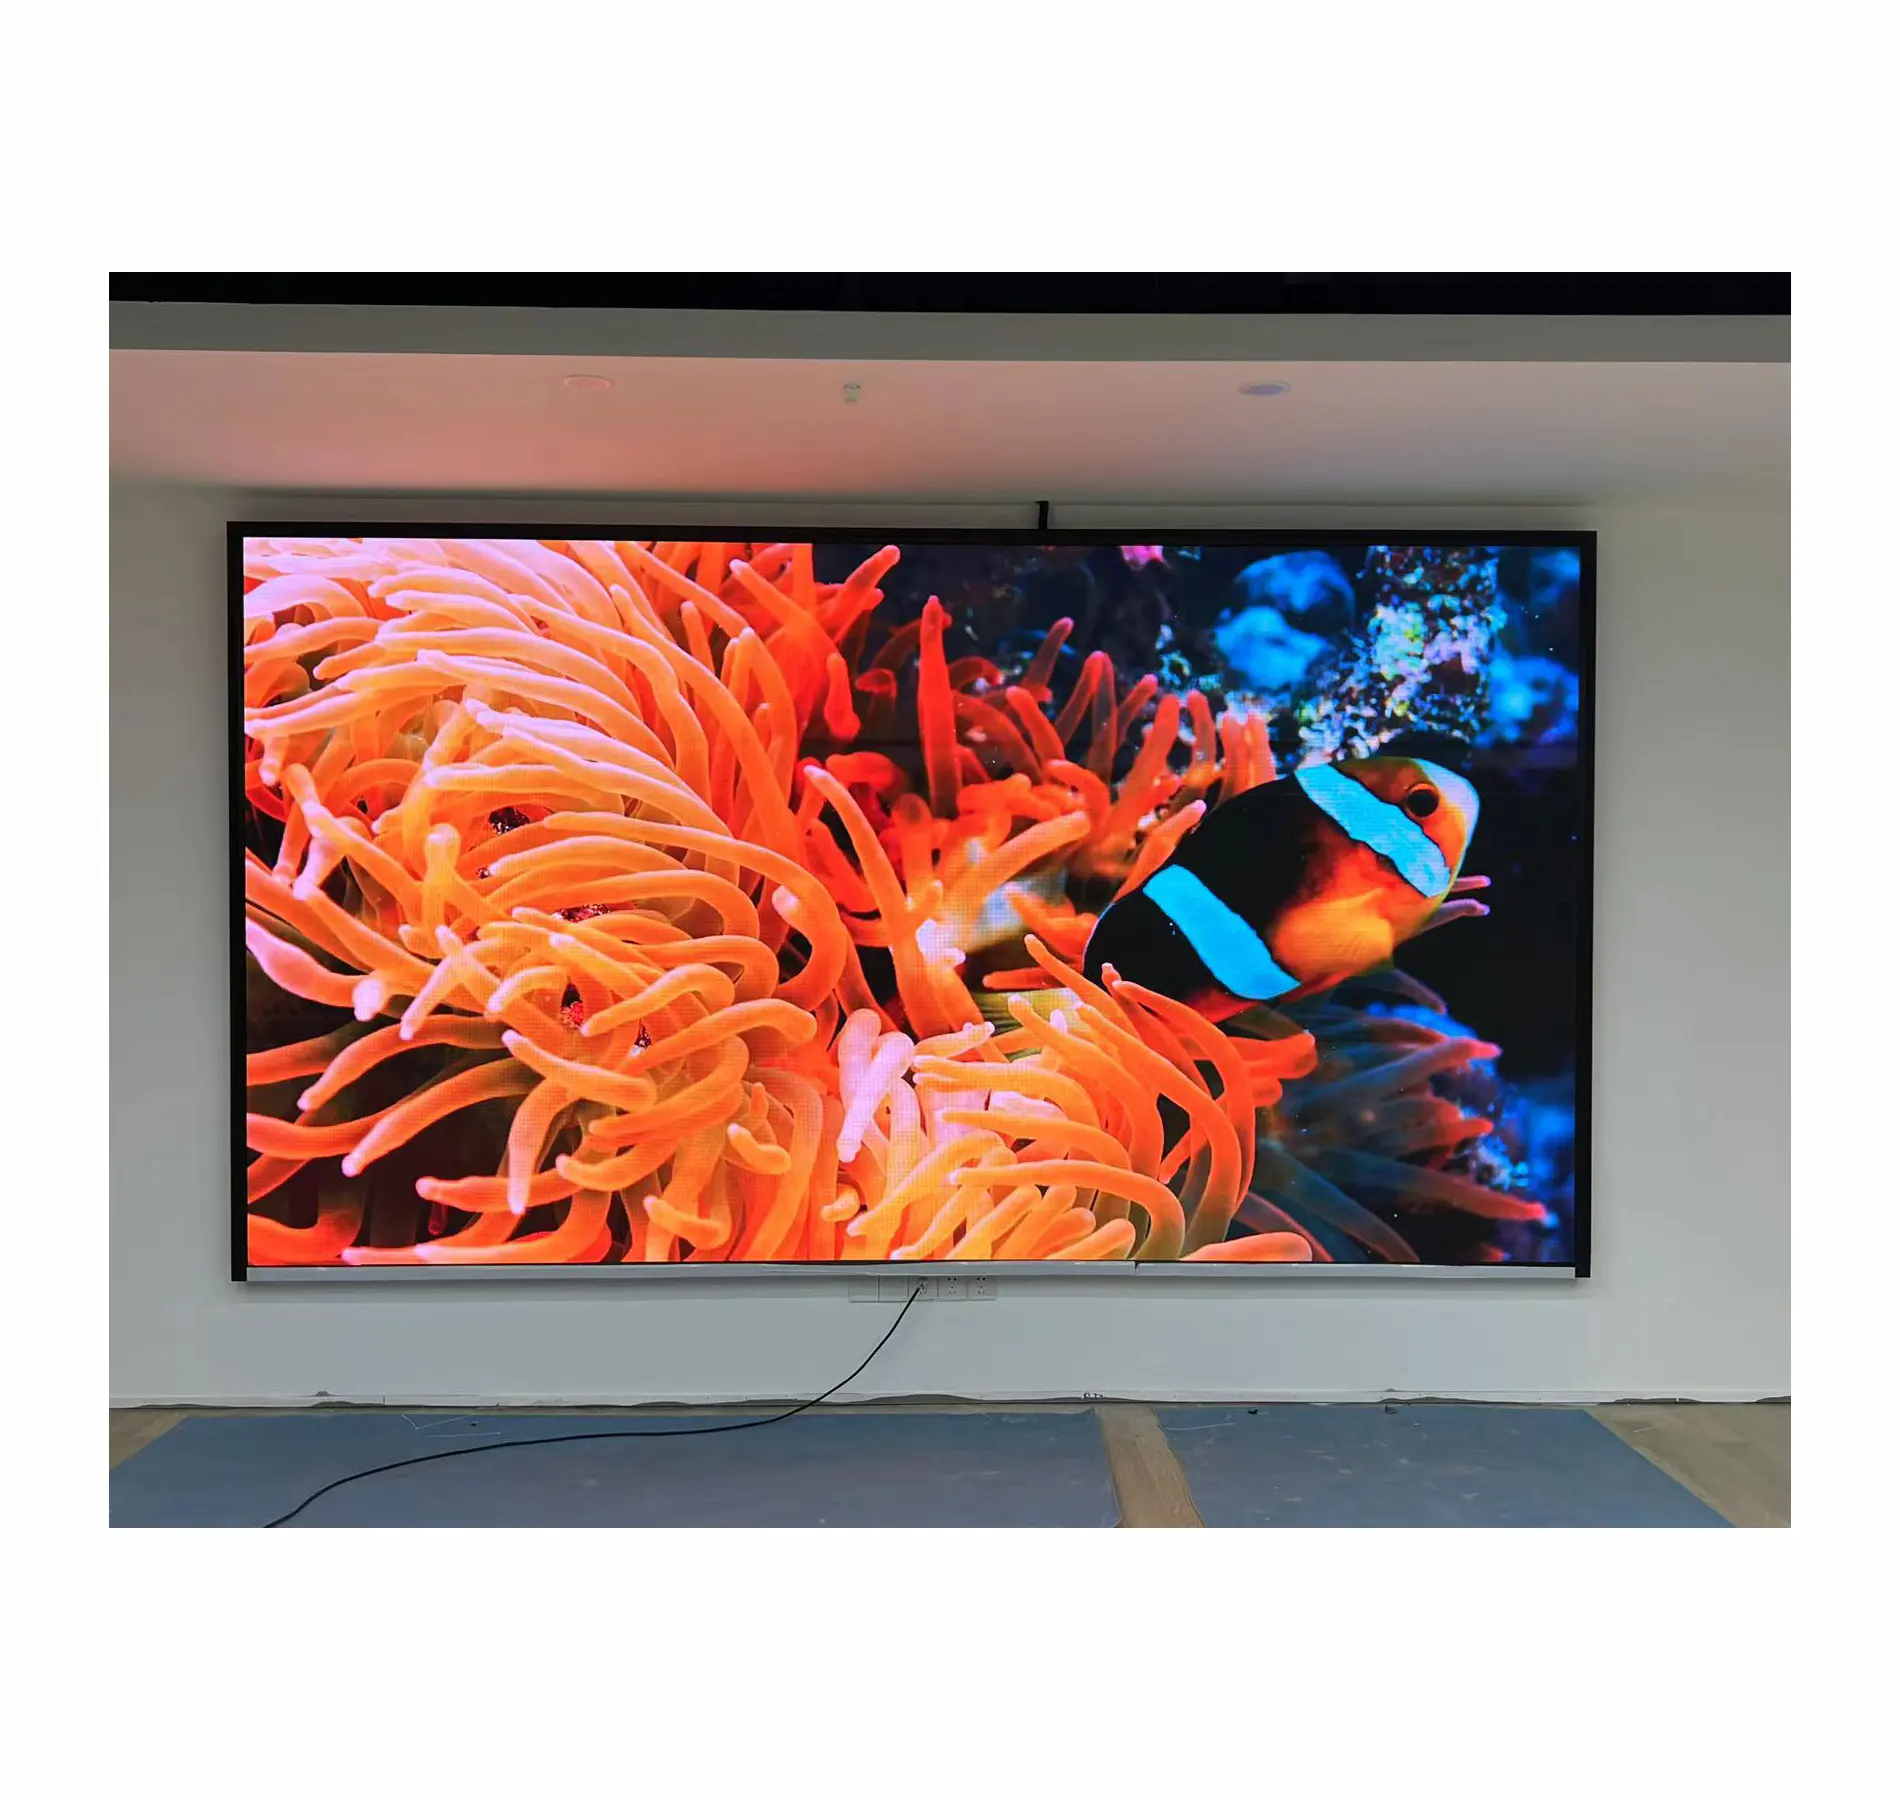 شاشة عرض led led madder hd فيديو جدارية ملونة بالكامل للسينما شاشة led رفيعة جدًا P1.5 P2 P3 P4 P5 لوحة شاشة عرض led